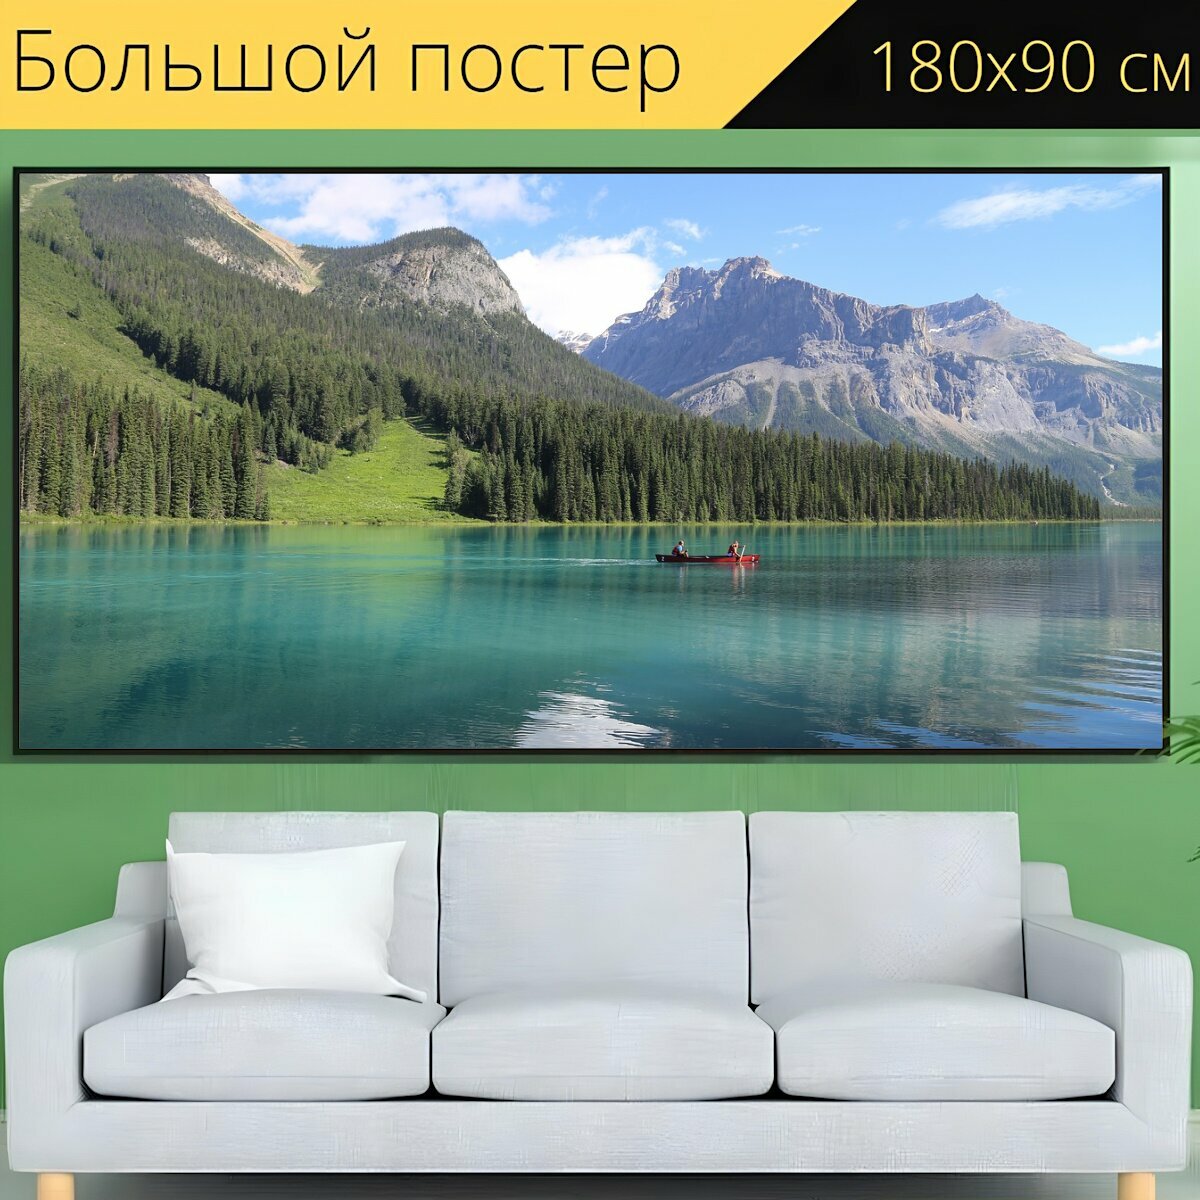 Большой постер "Озеро, пейзажи, пейзаж" 180 x 90 см. для интерьера